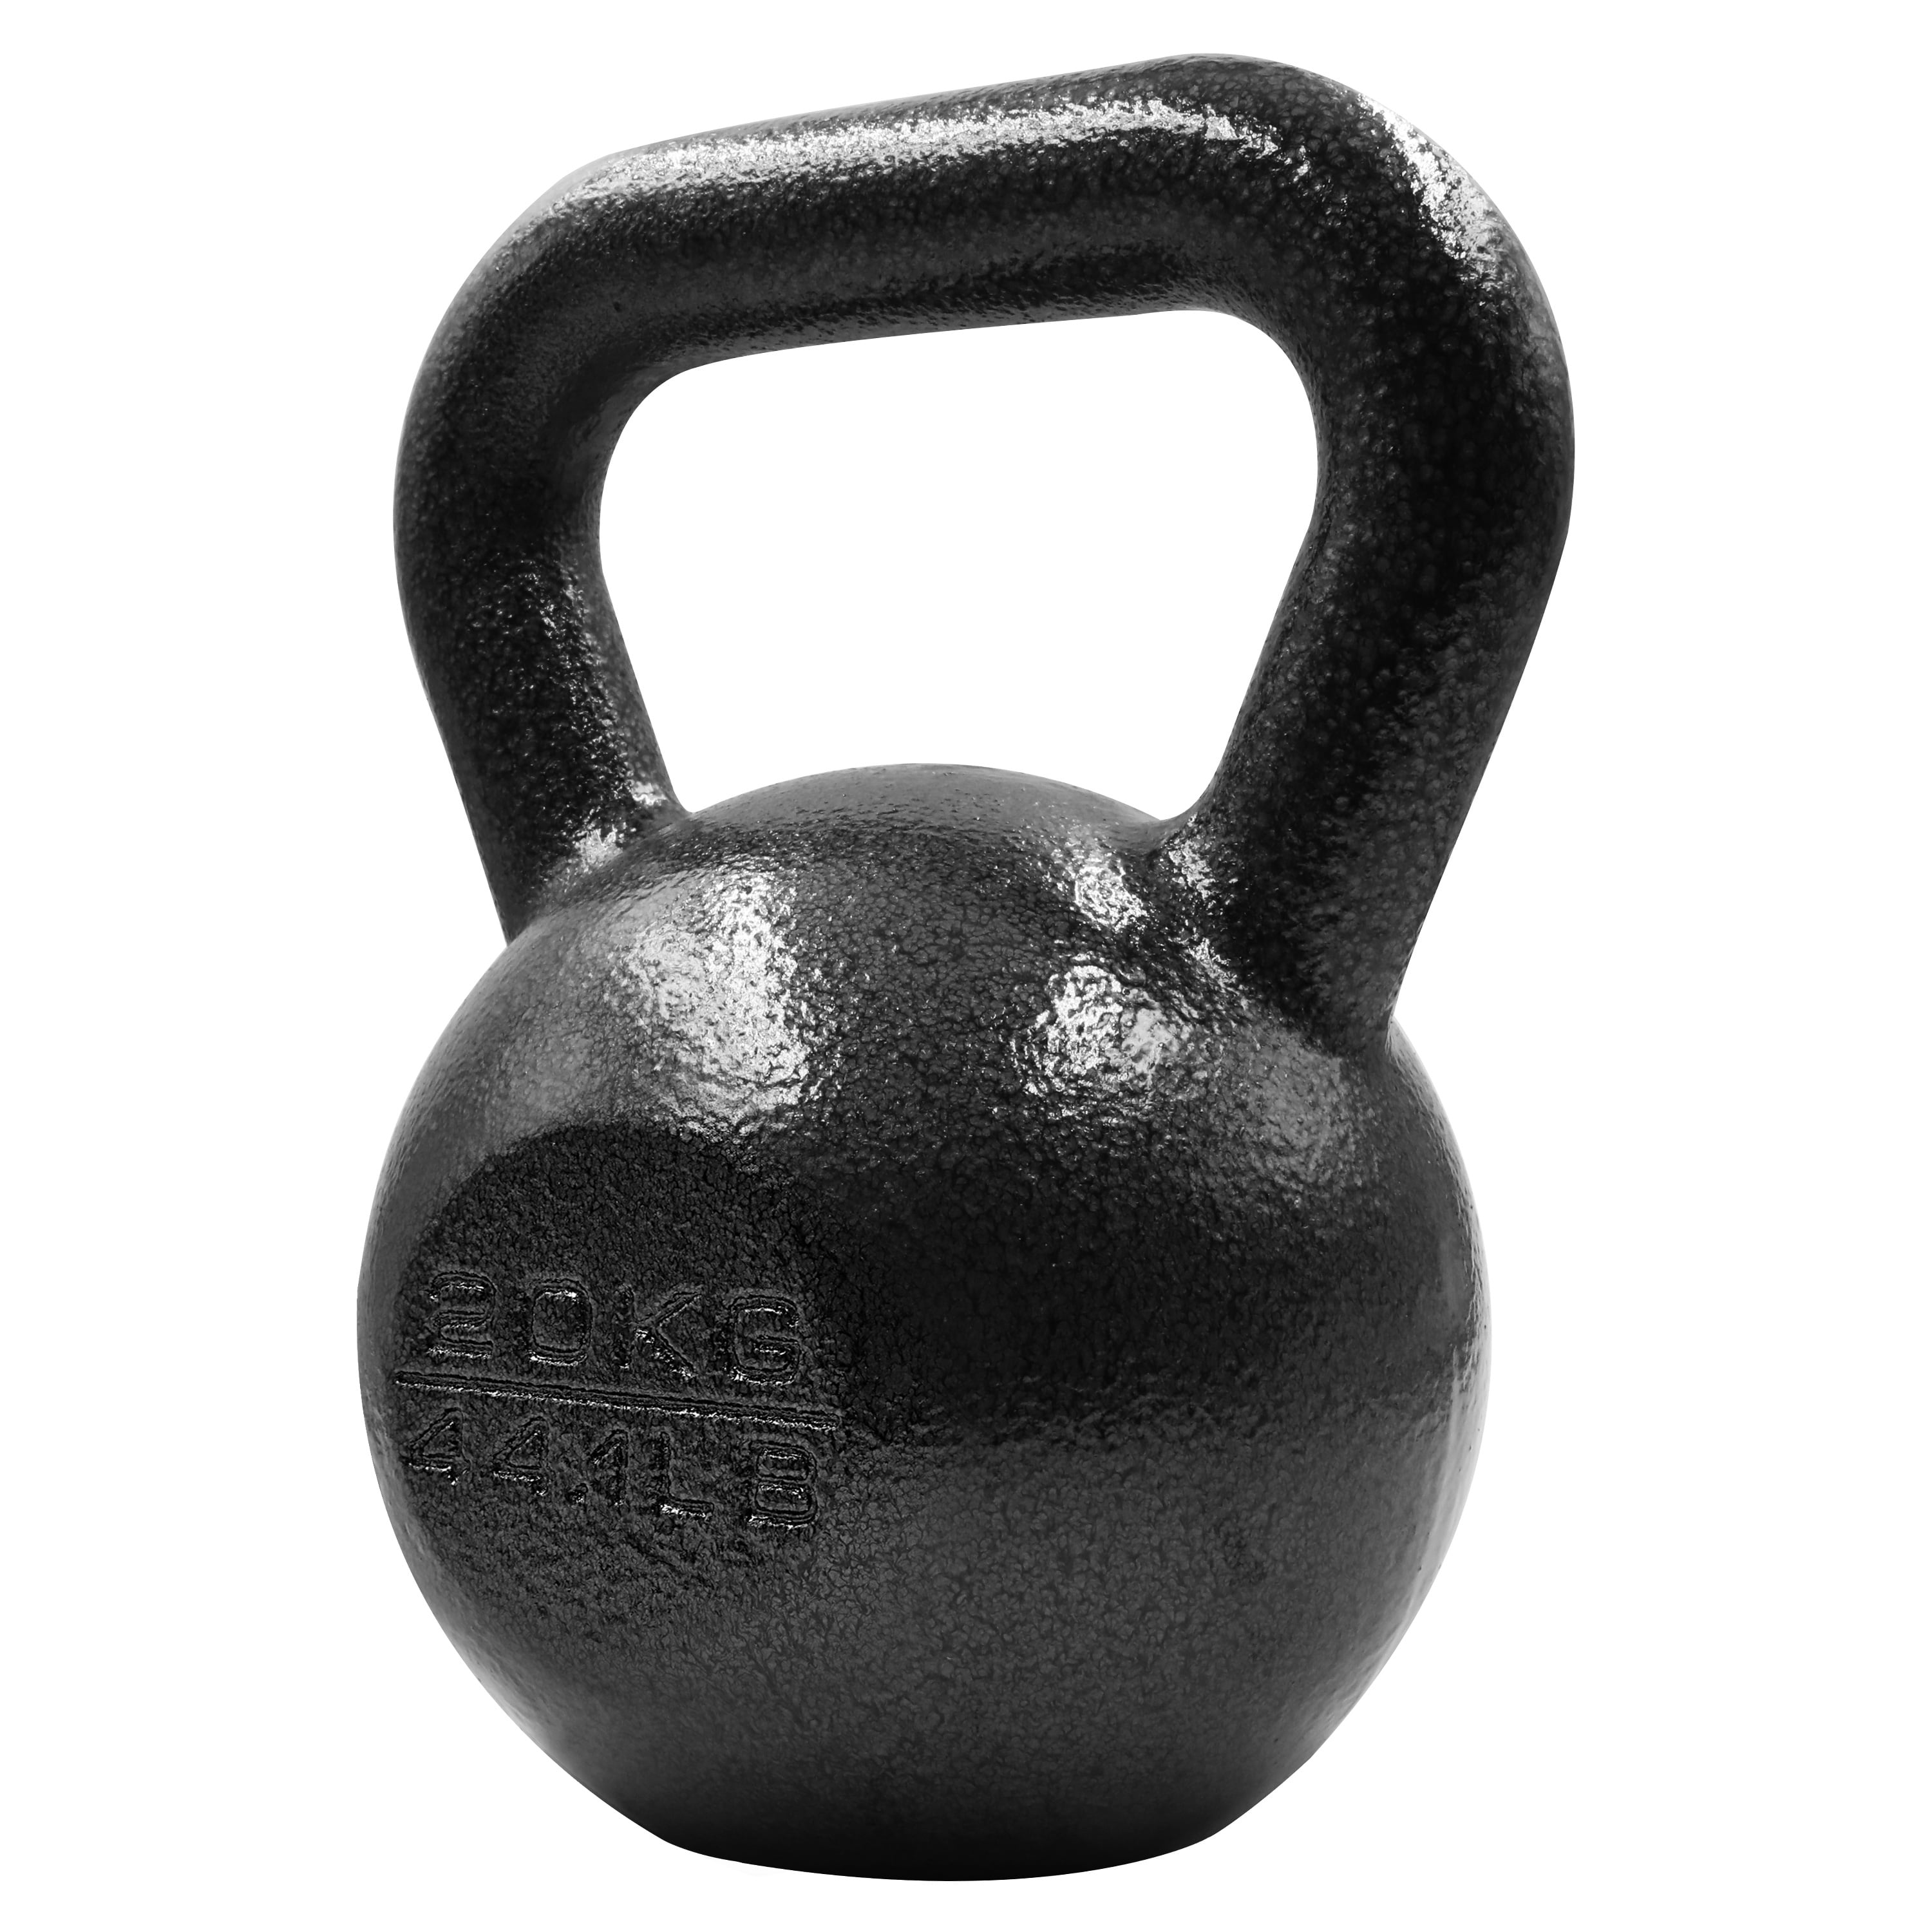 Vinyl Kettlebell Weight Training Fitness Home Gym Equipment 8kg 12kg 14-20kg 